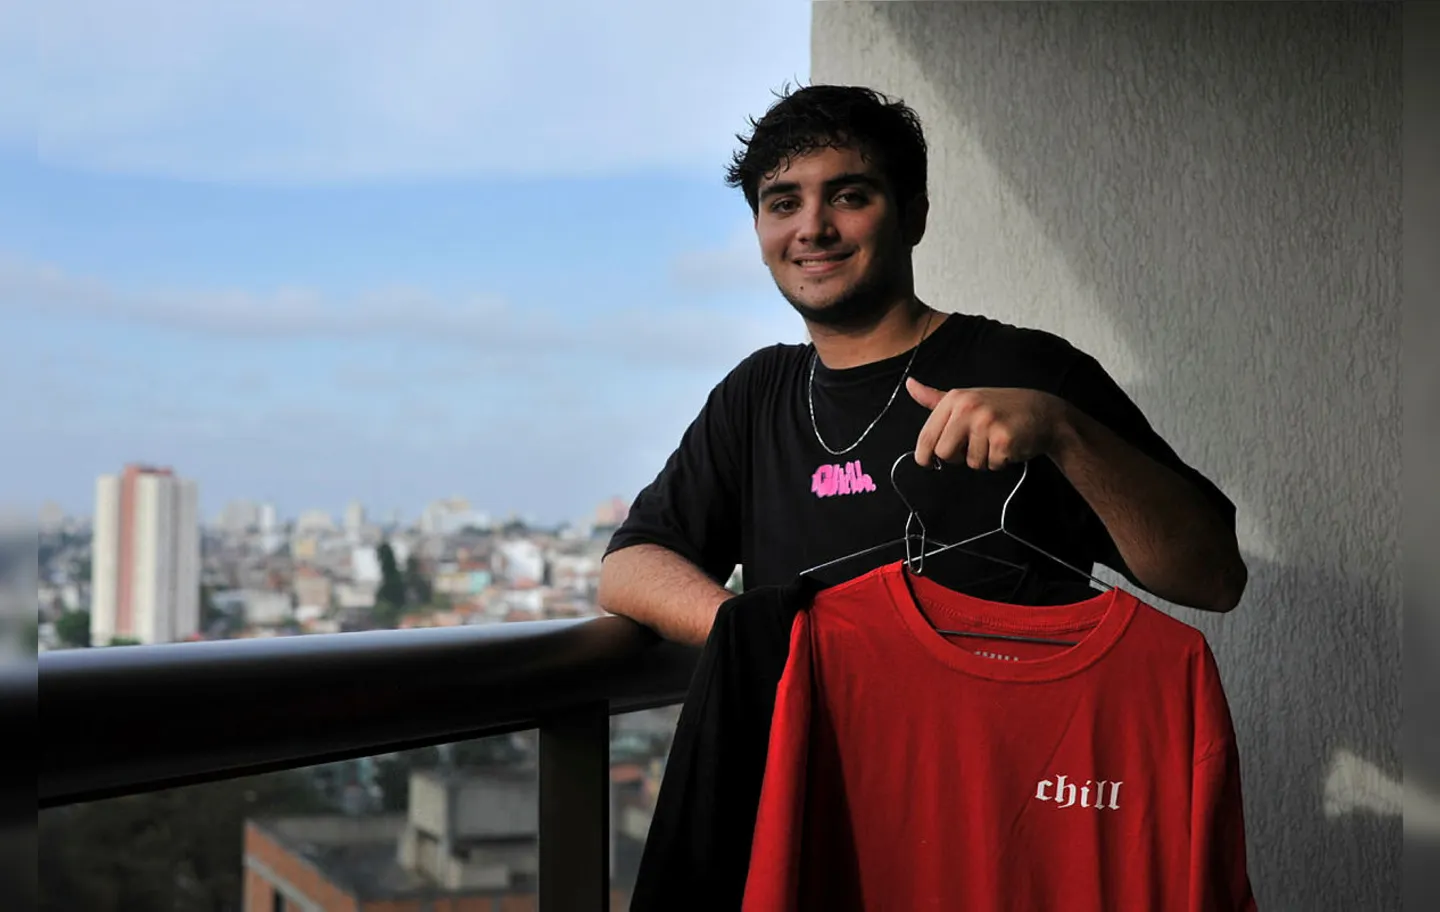 Lucas Ayres, o Lug, de 18 anos, criou uma marca de roupa quando tinha 16